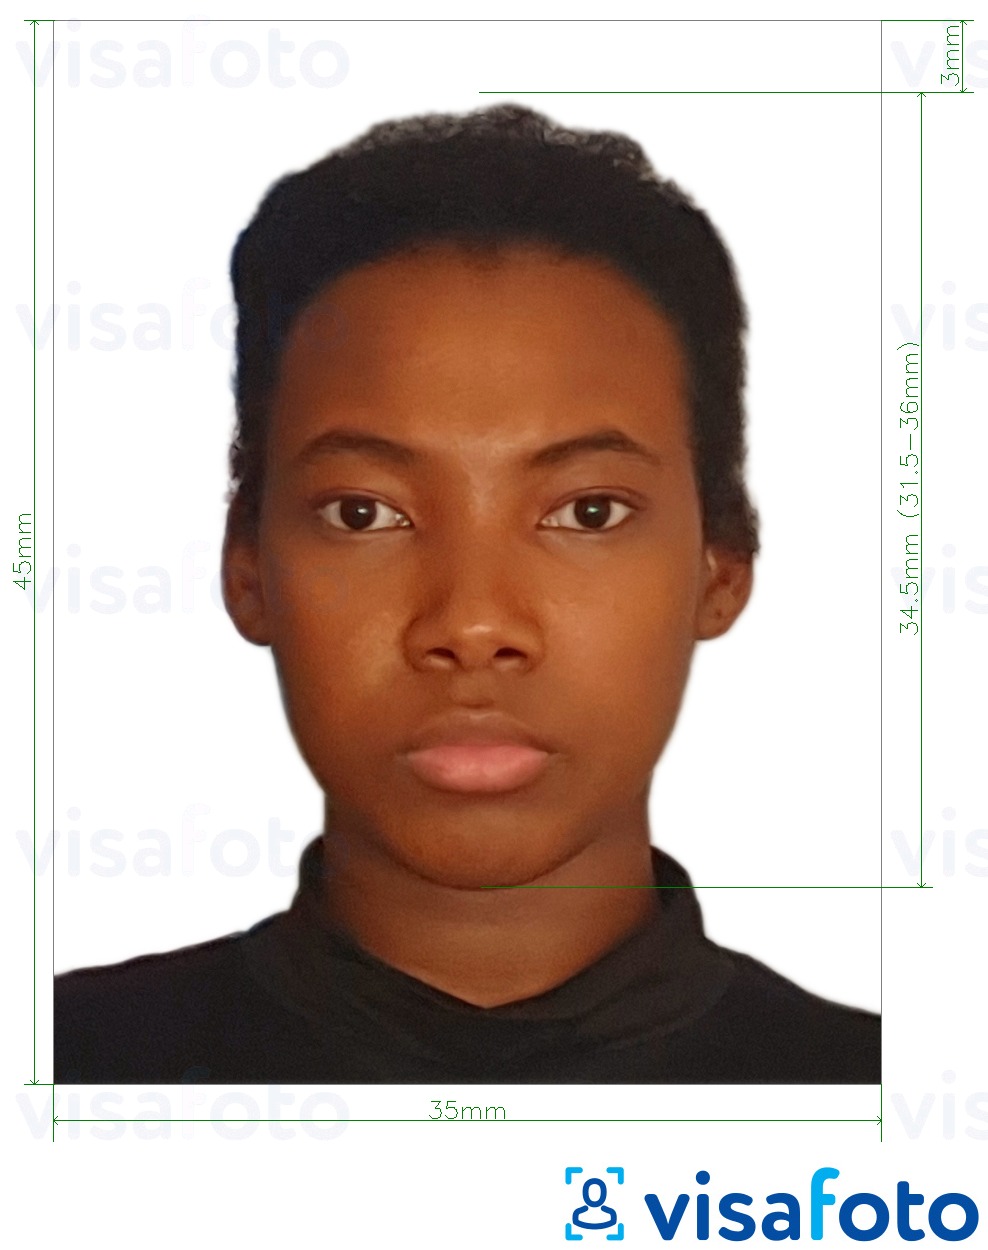 Contoh foto untuk Madagascar visa 3.5x4.5 cm (35x45 mm) dengan spesifikasi saiz yang tepat.